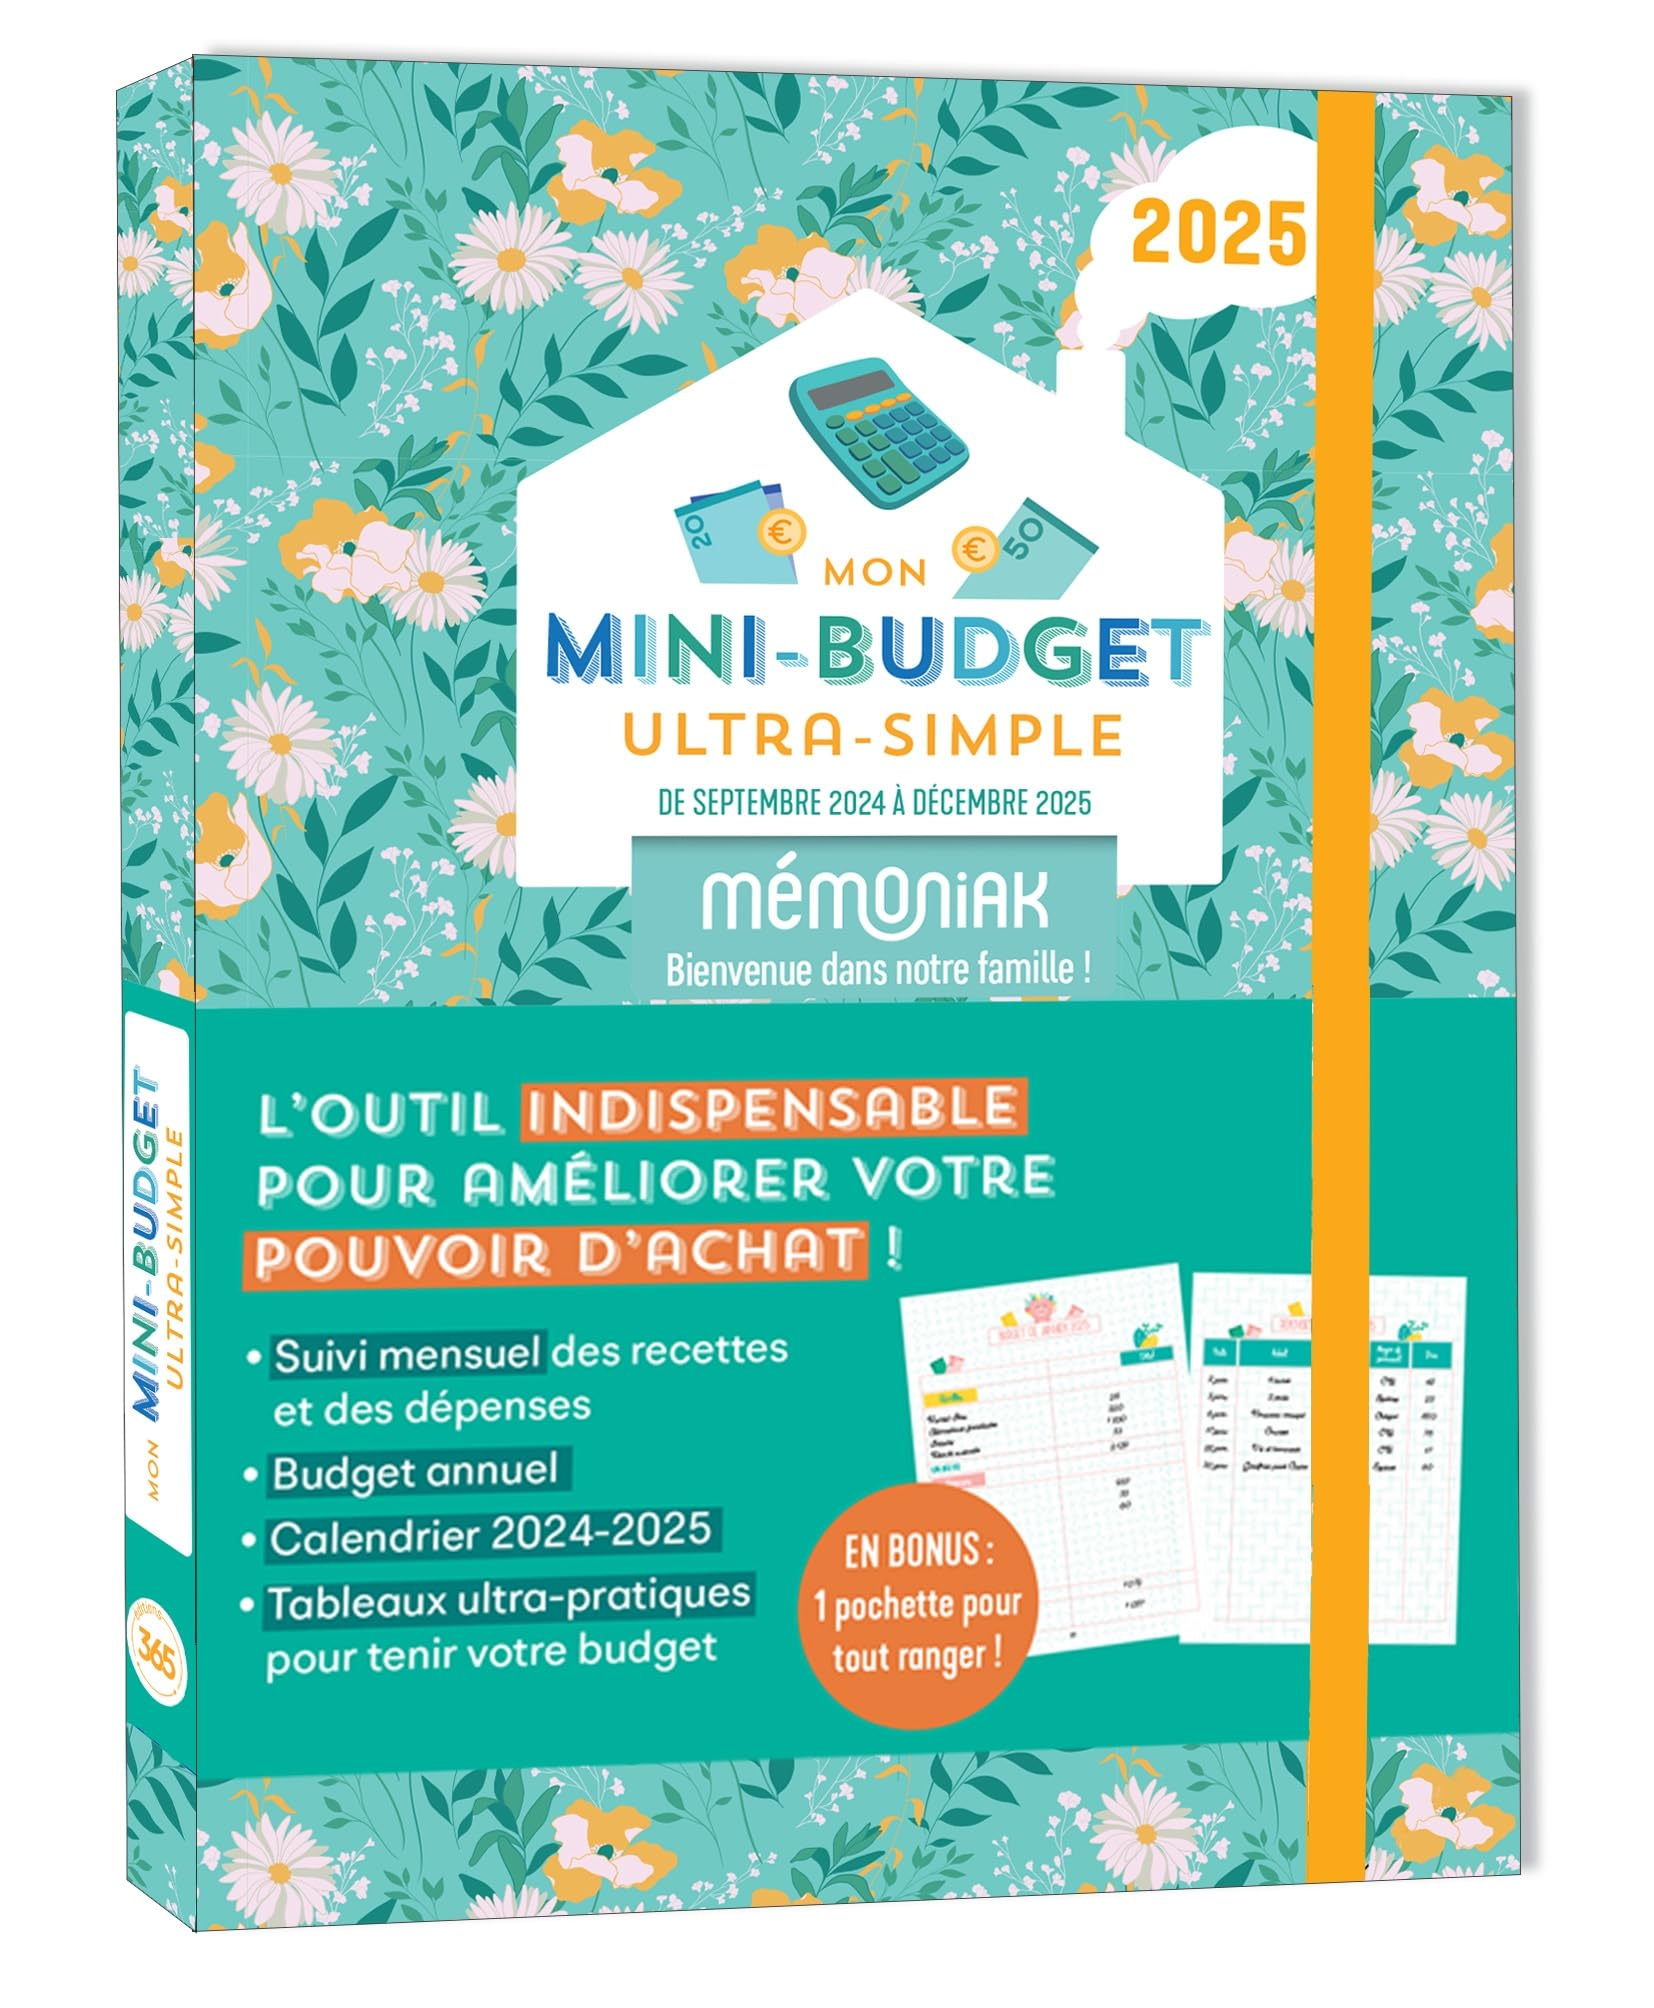 Mon mini-budget ultra-simple 2025 : de septembre 2024 à décembre 2025